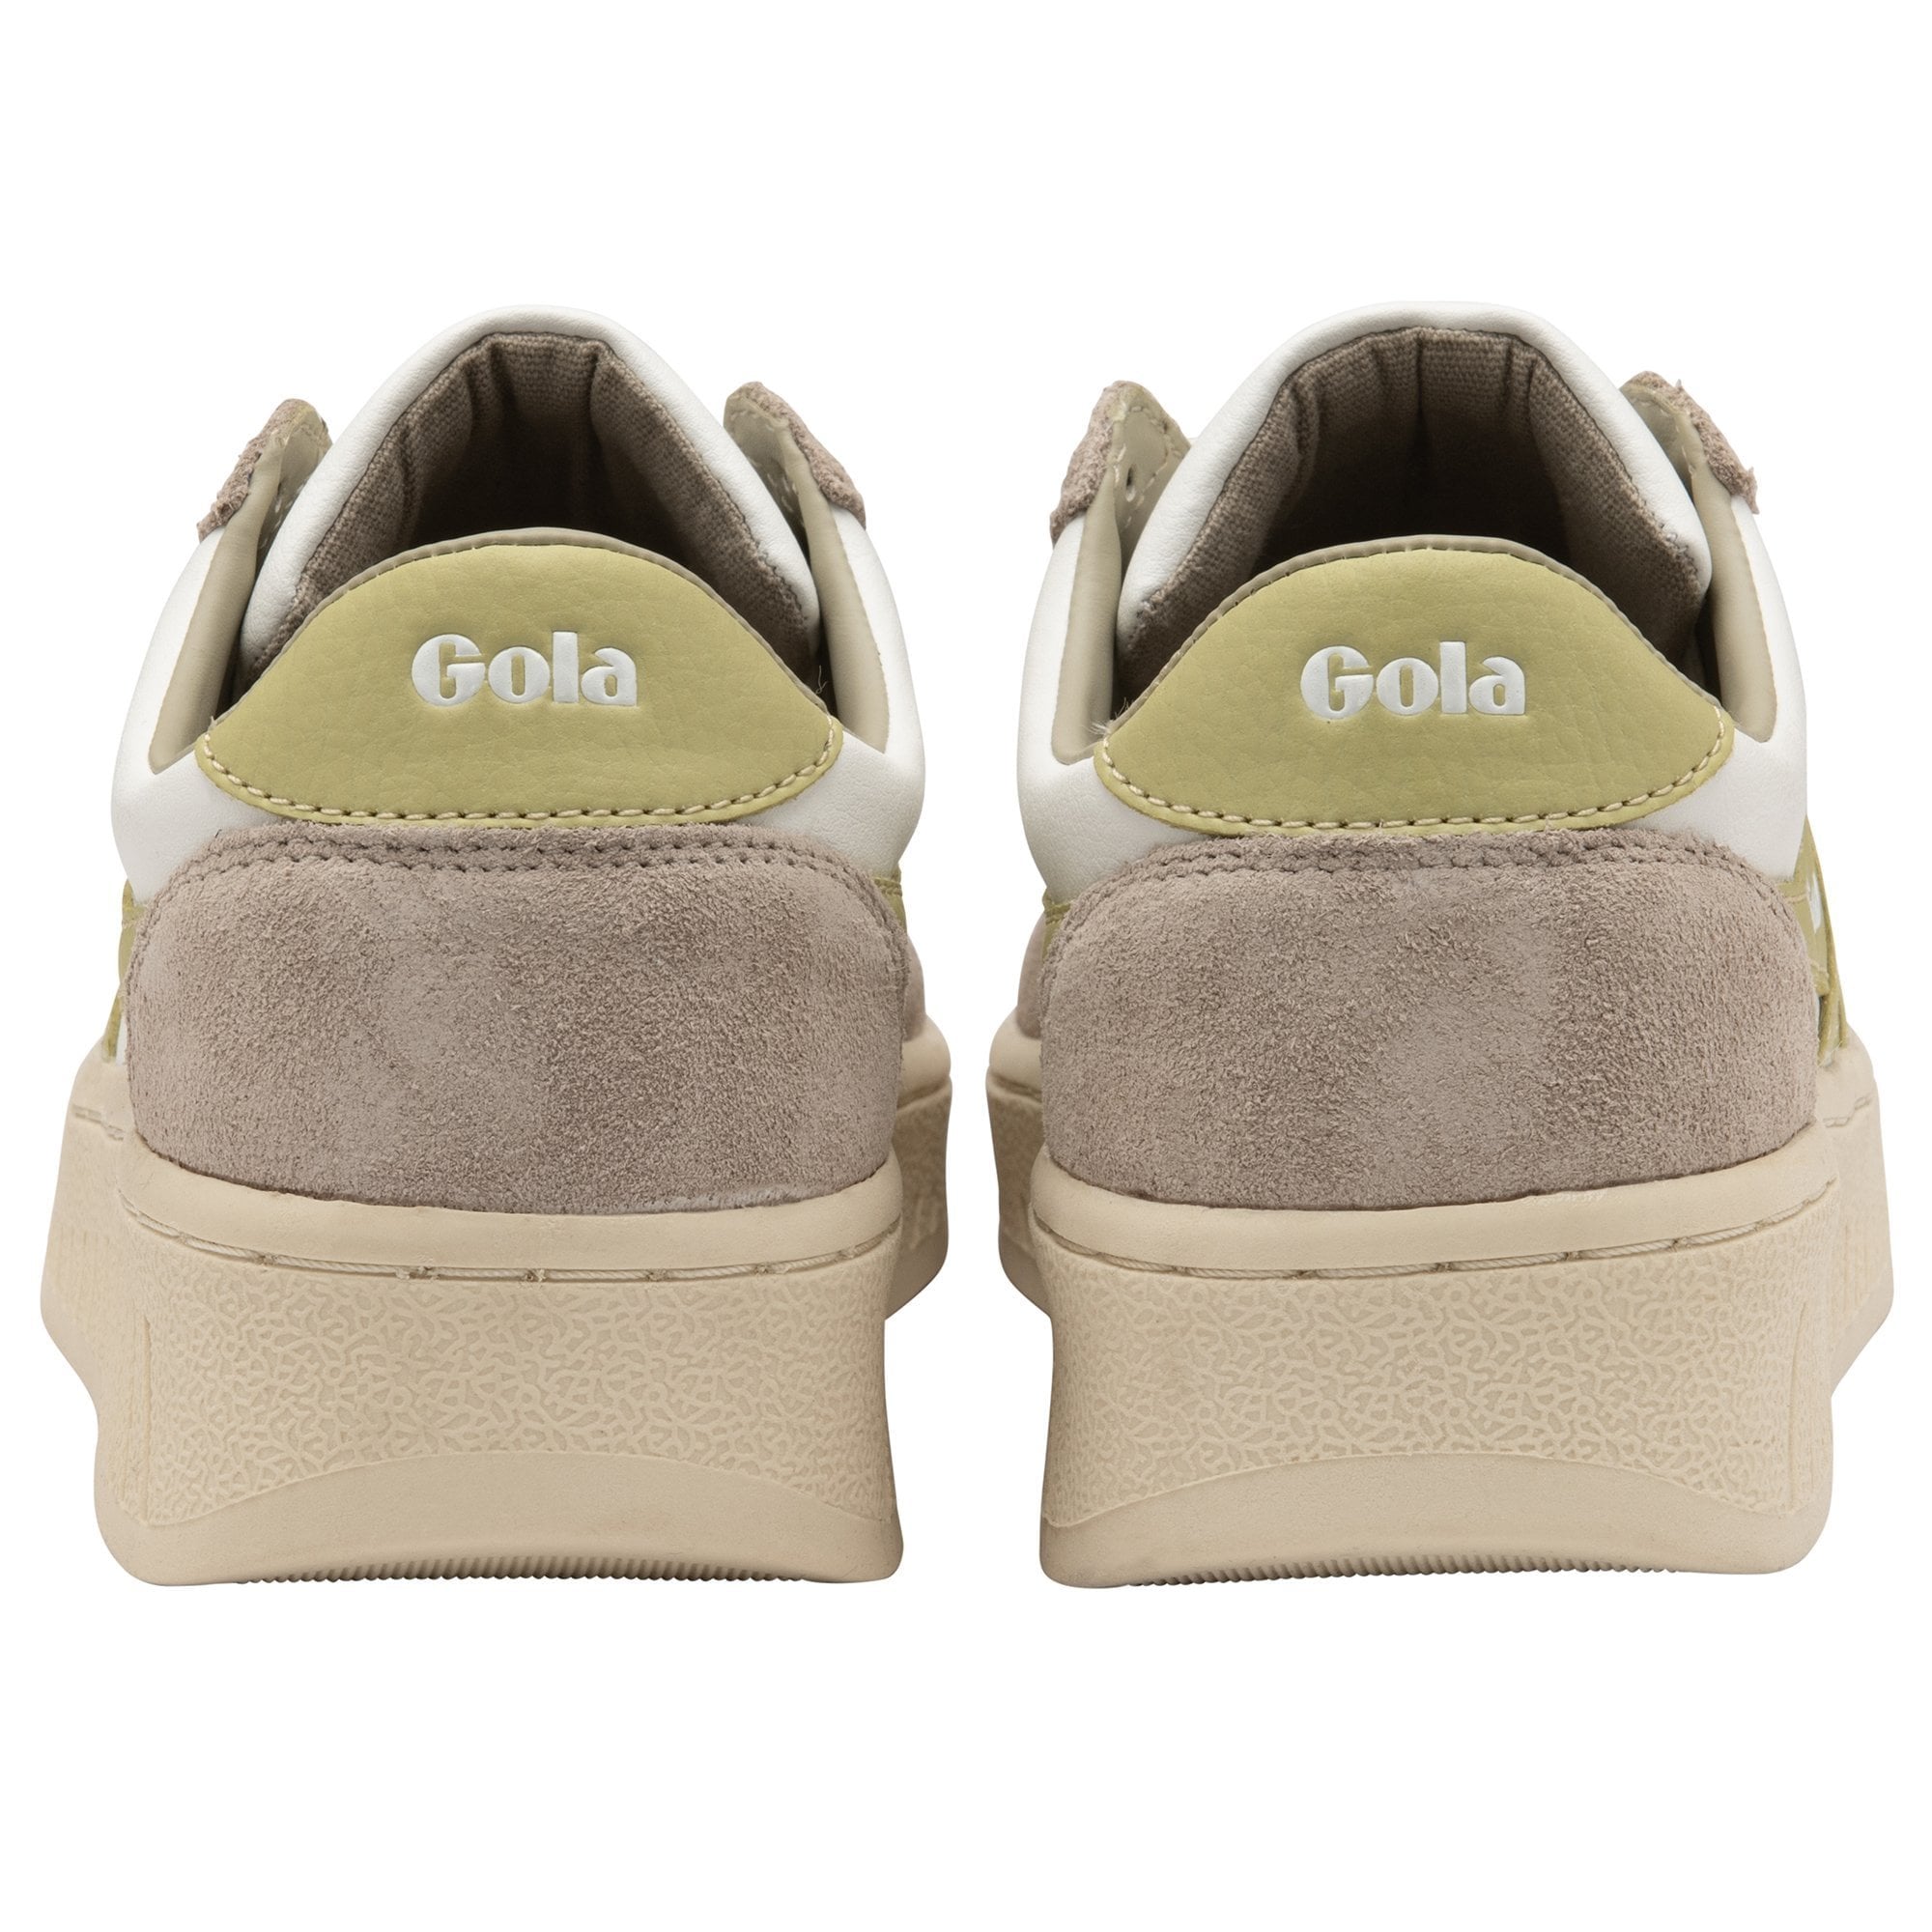 Gola Classic Women's Grandslam Pure Sneakers